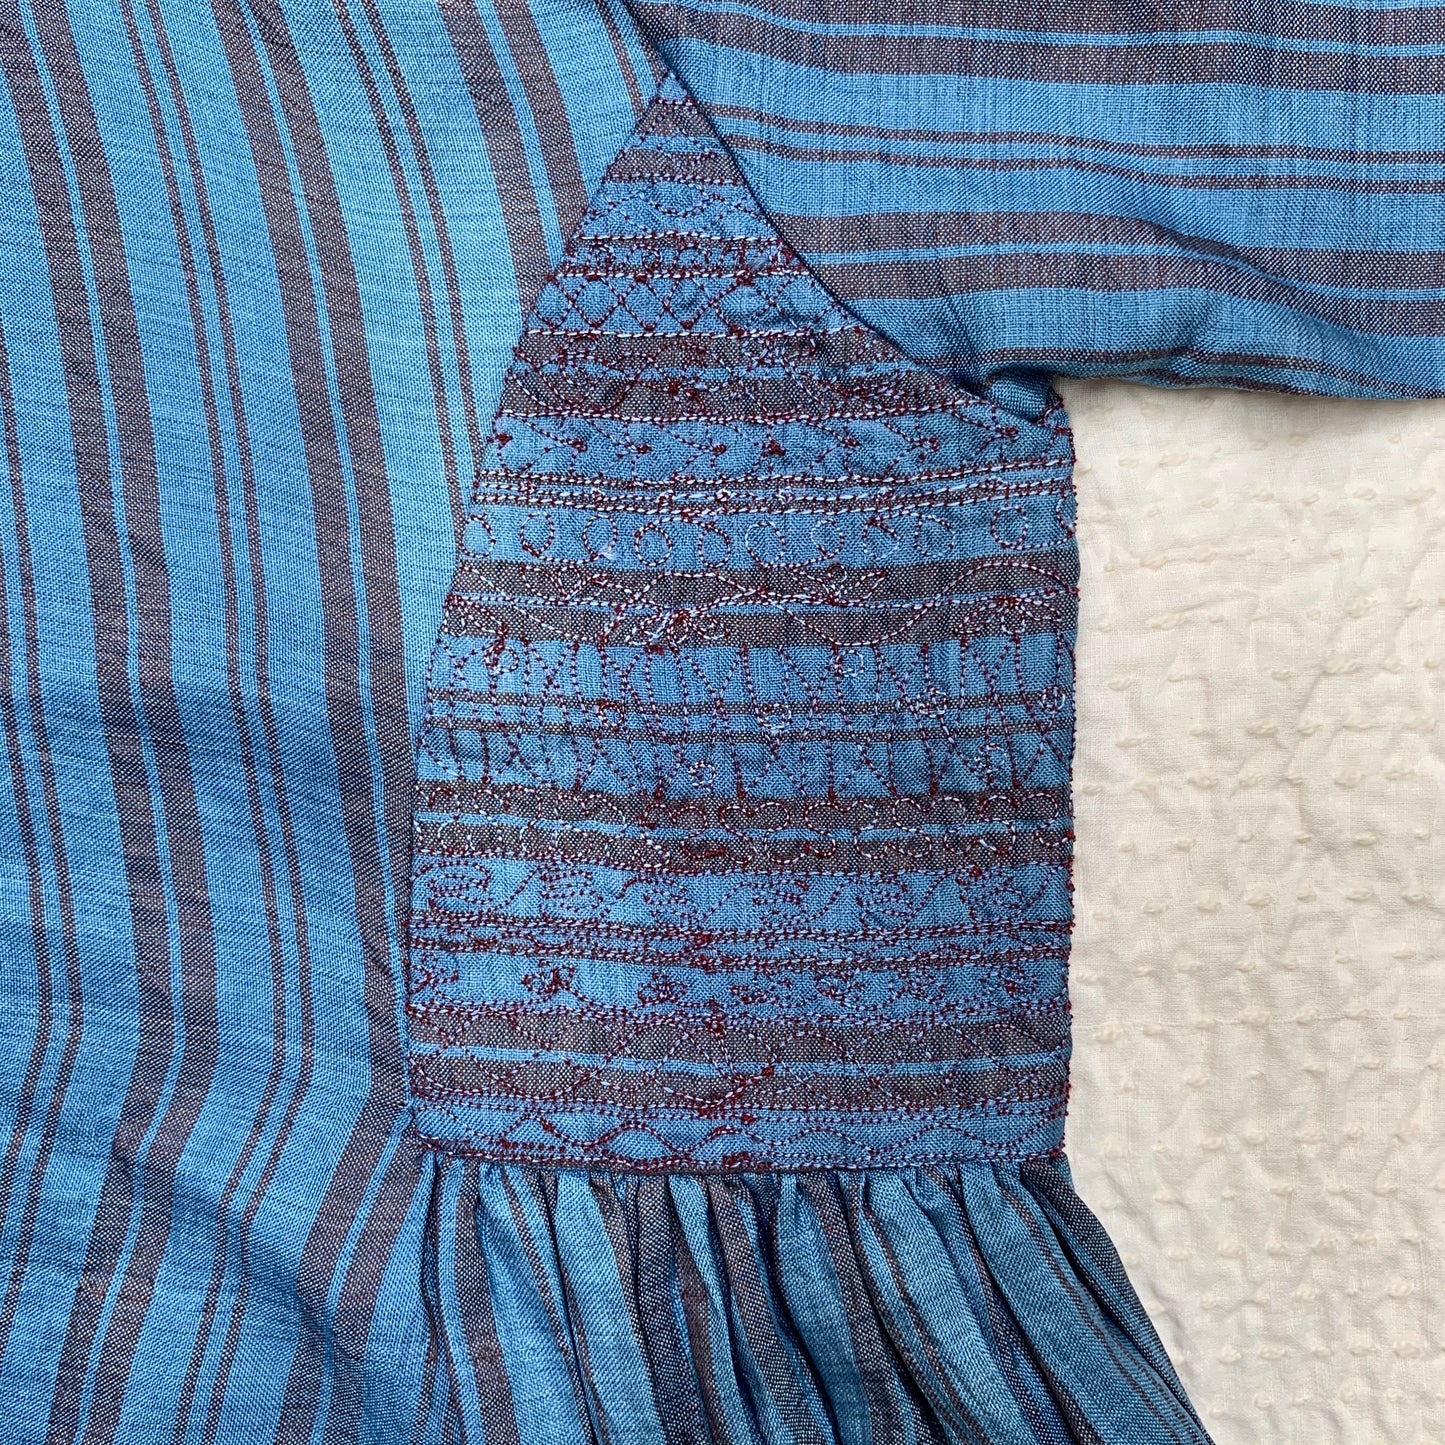 India, Maku Textiles, Udumbara dress